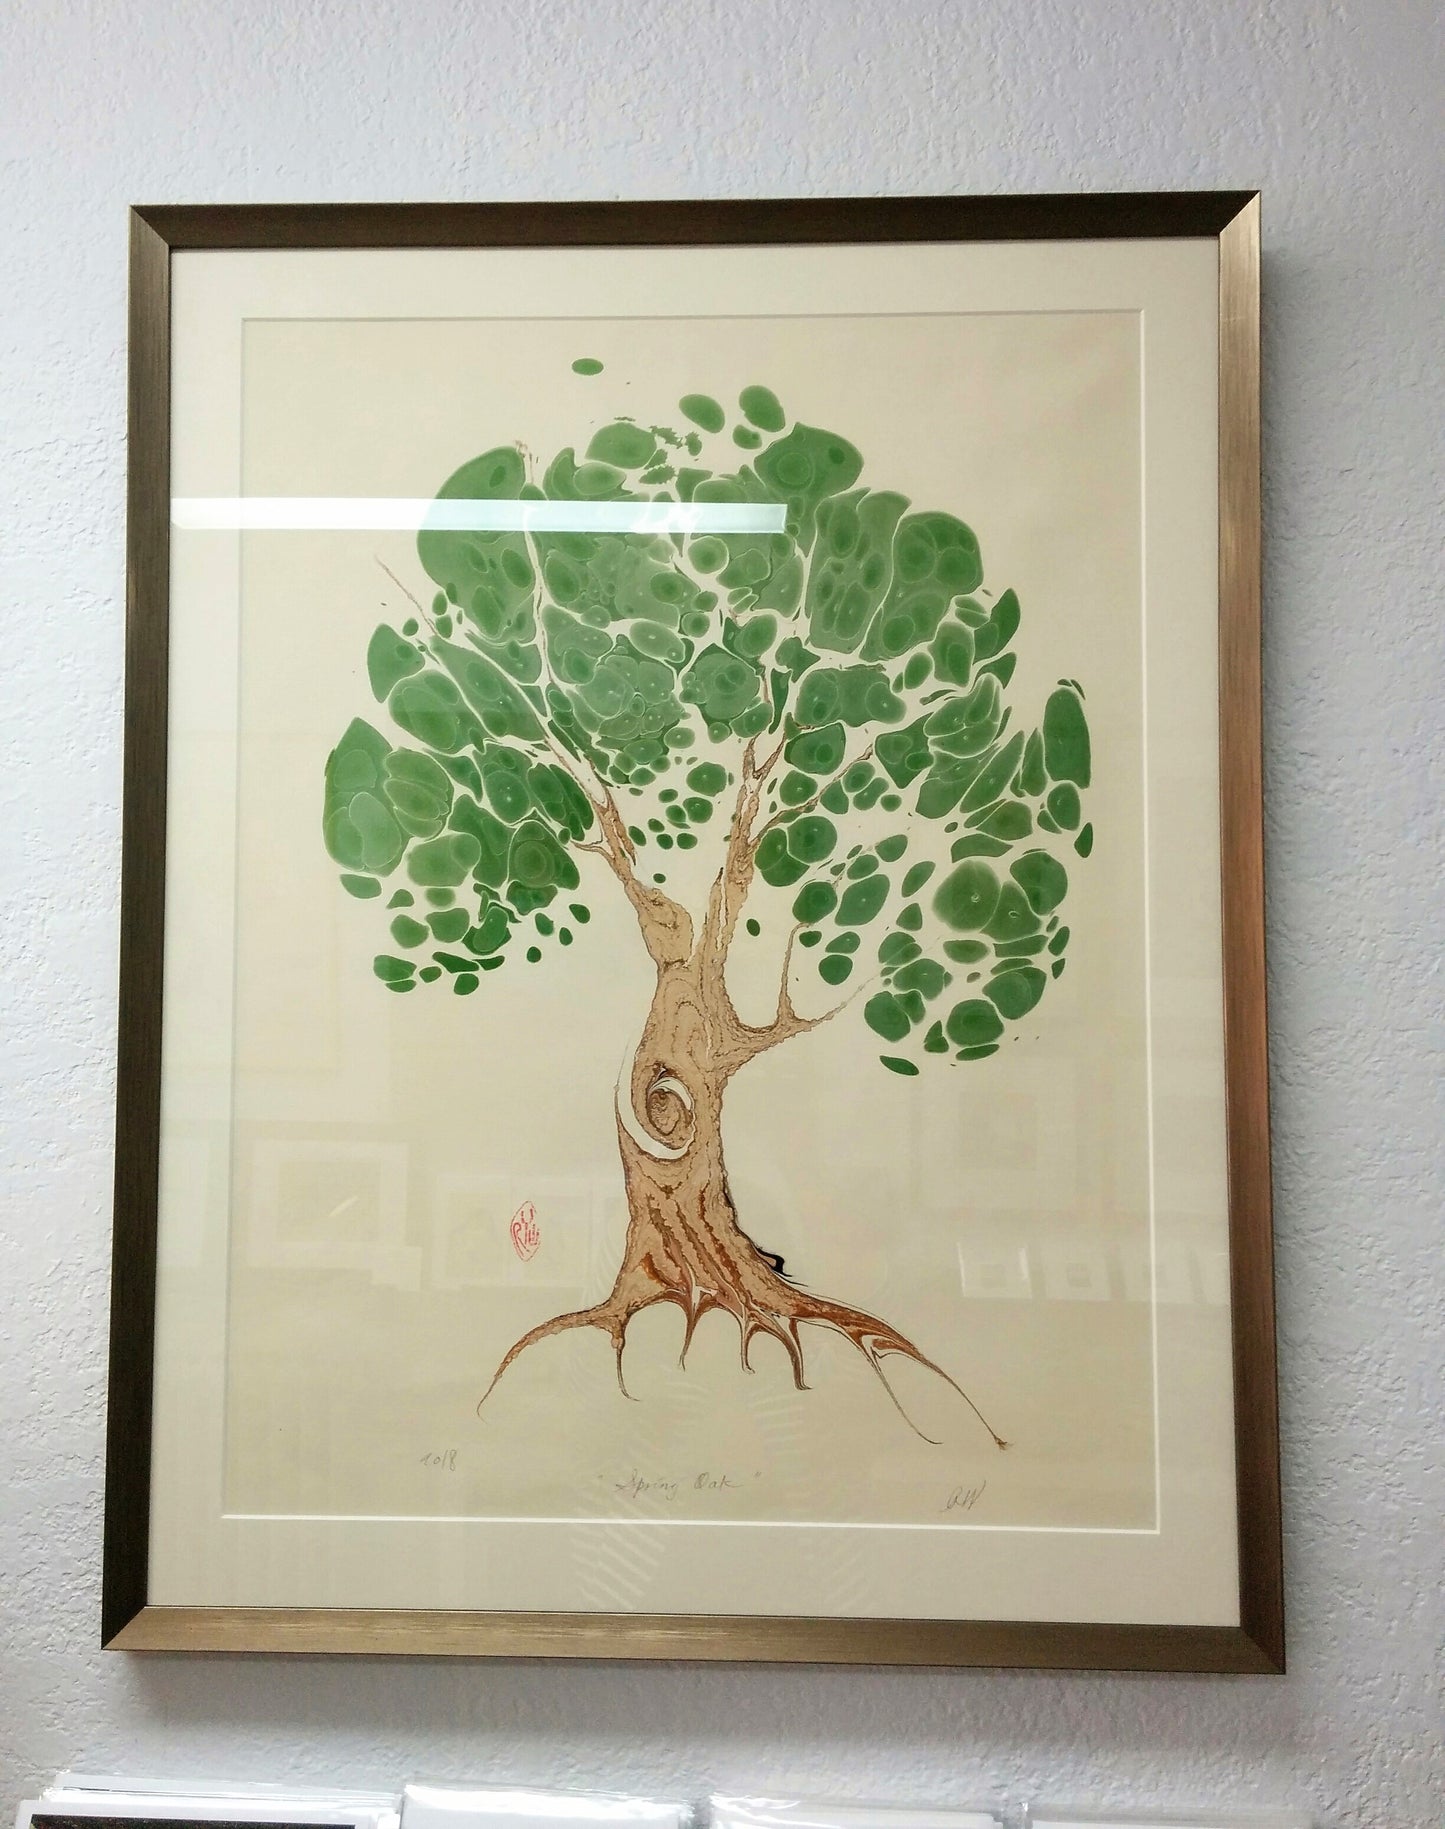 Framed Marbled Graphic - "Spring Oak"